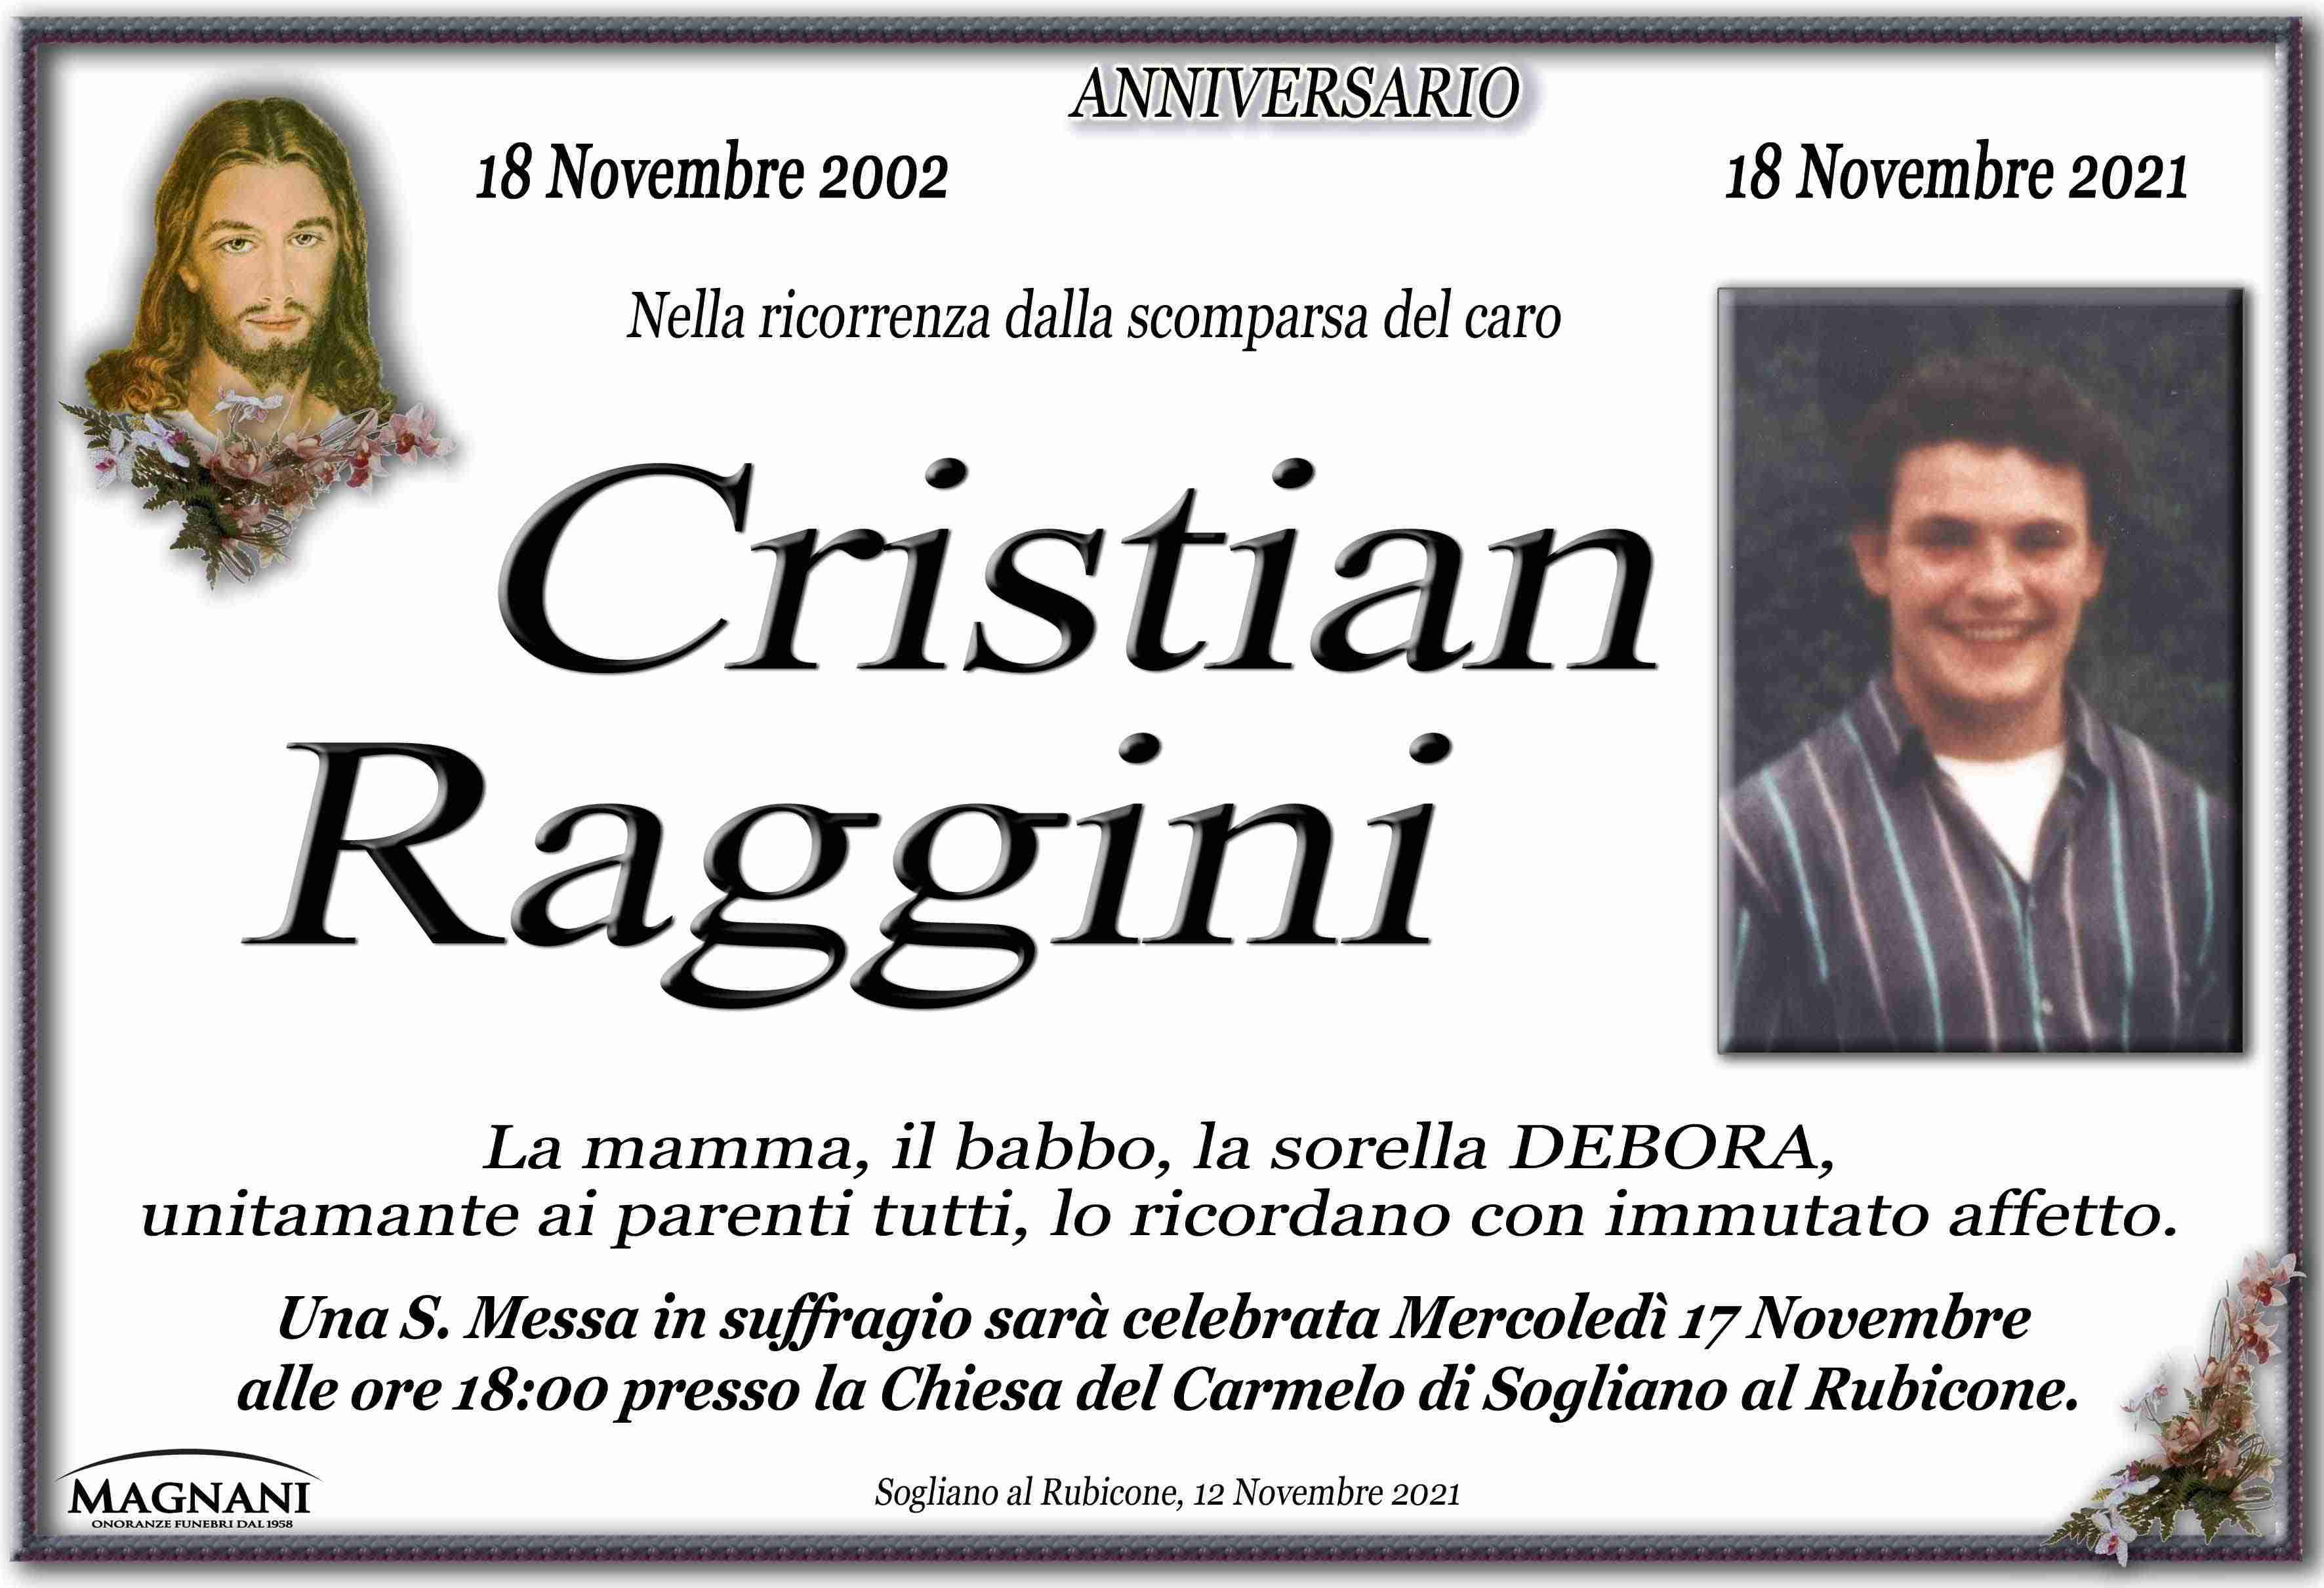 Cristian Raggini